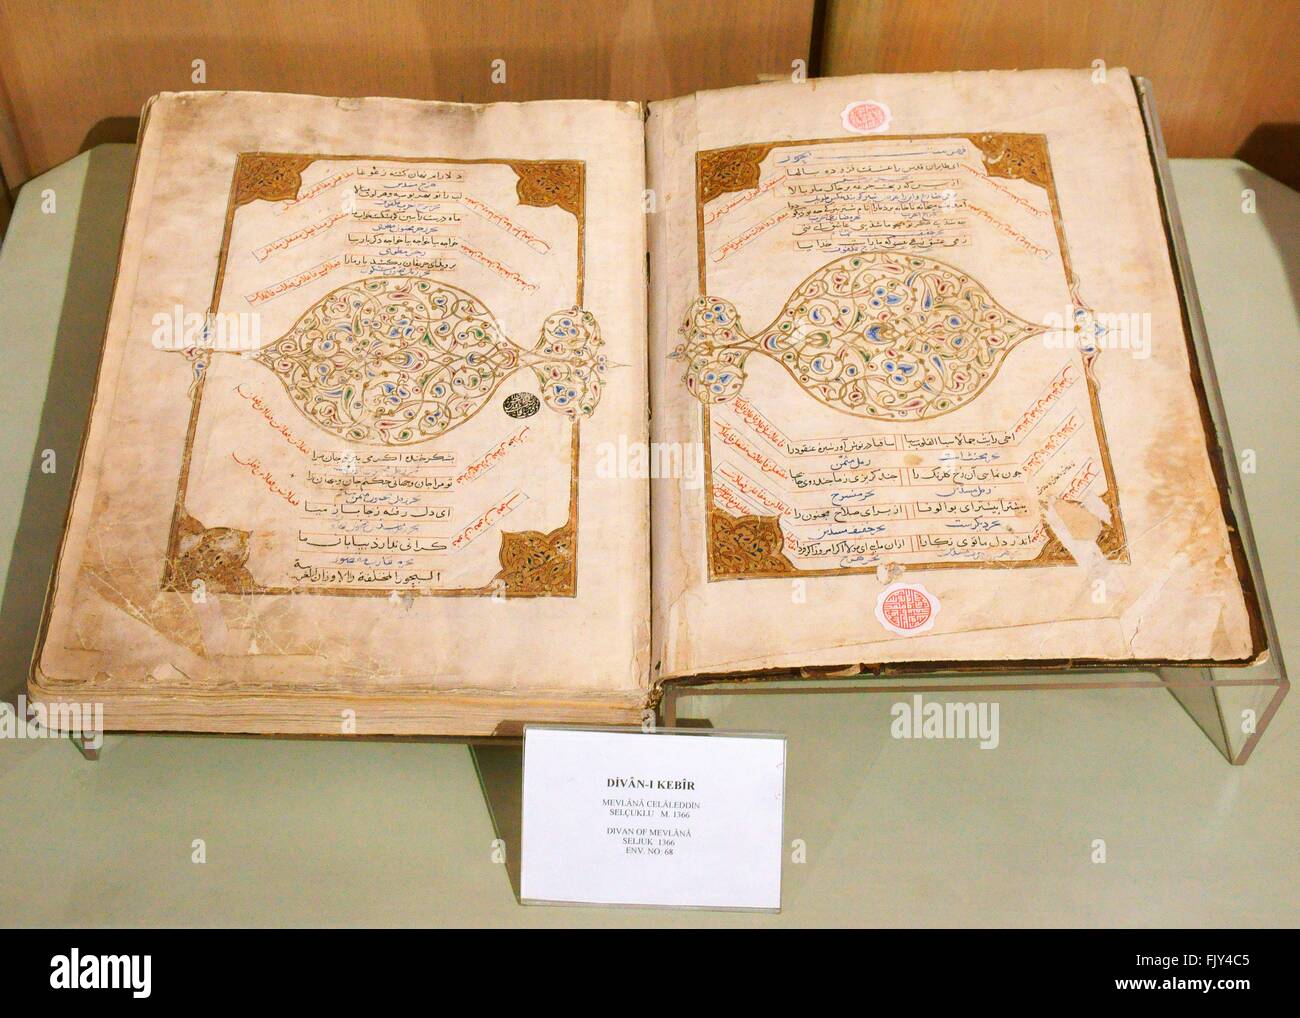 Museo di mevlana, città di Konya, Turchia. libro di poesie o masnavis scritto da mistica sufi mevlana risale al 1366 Foto Stock